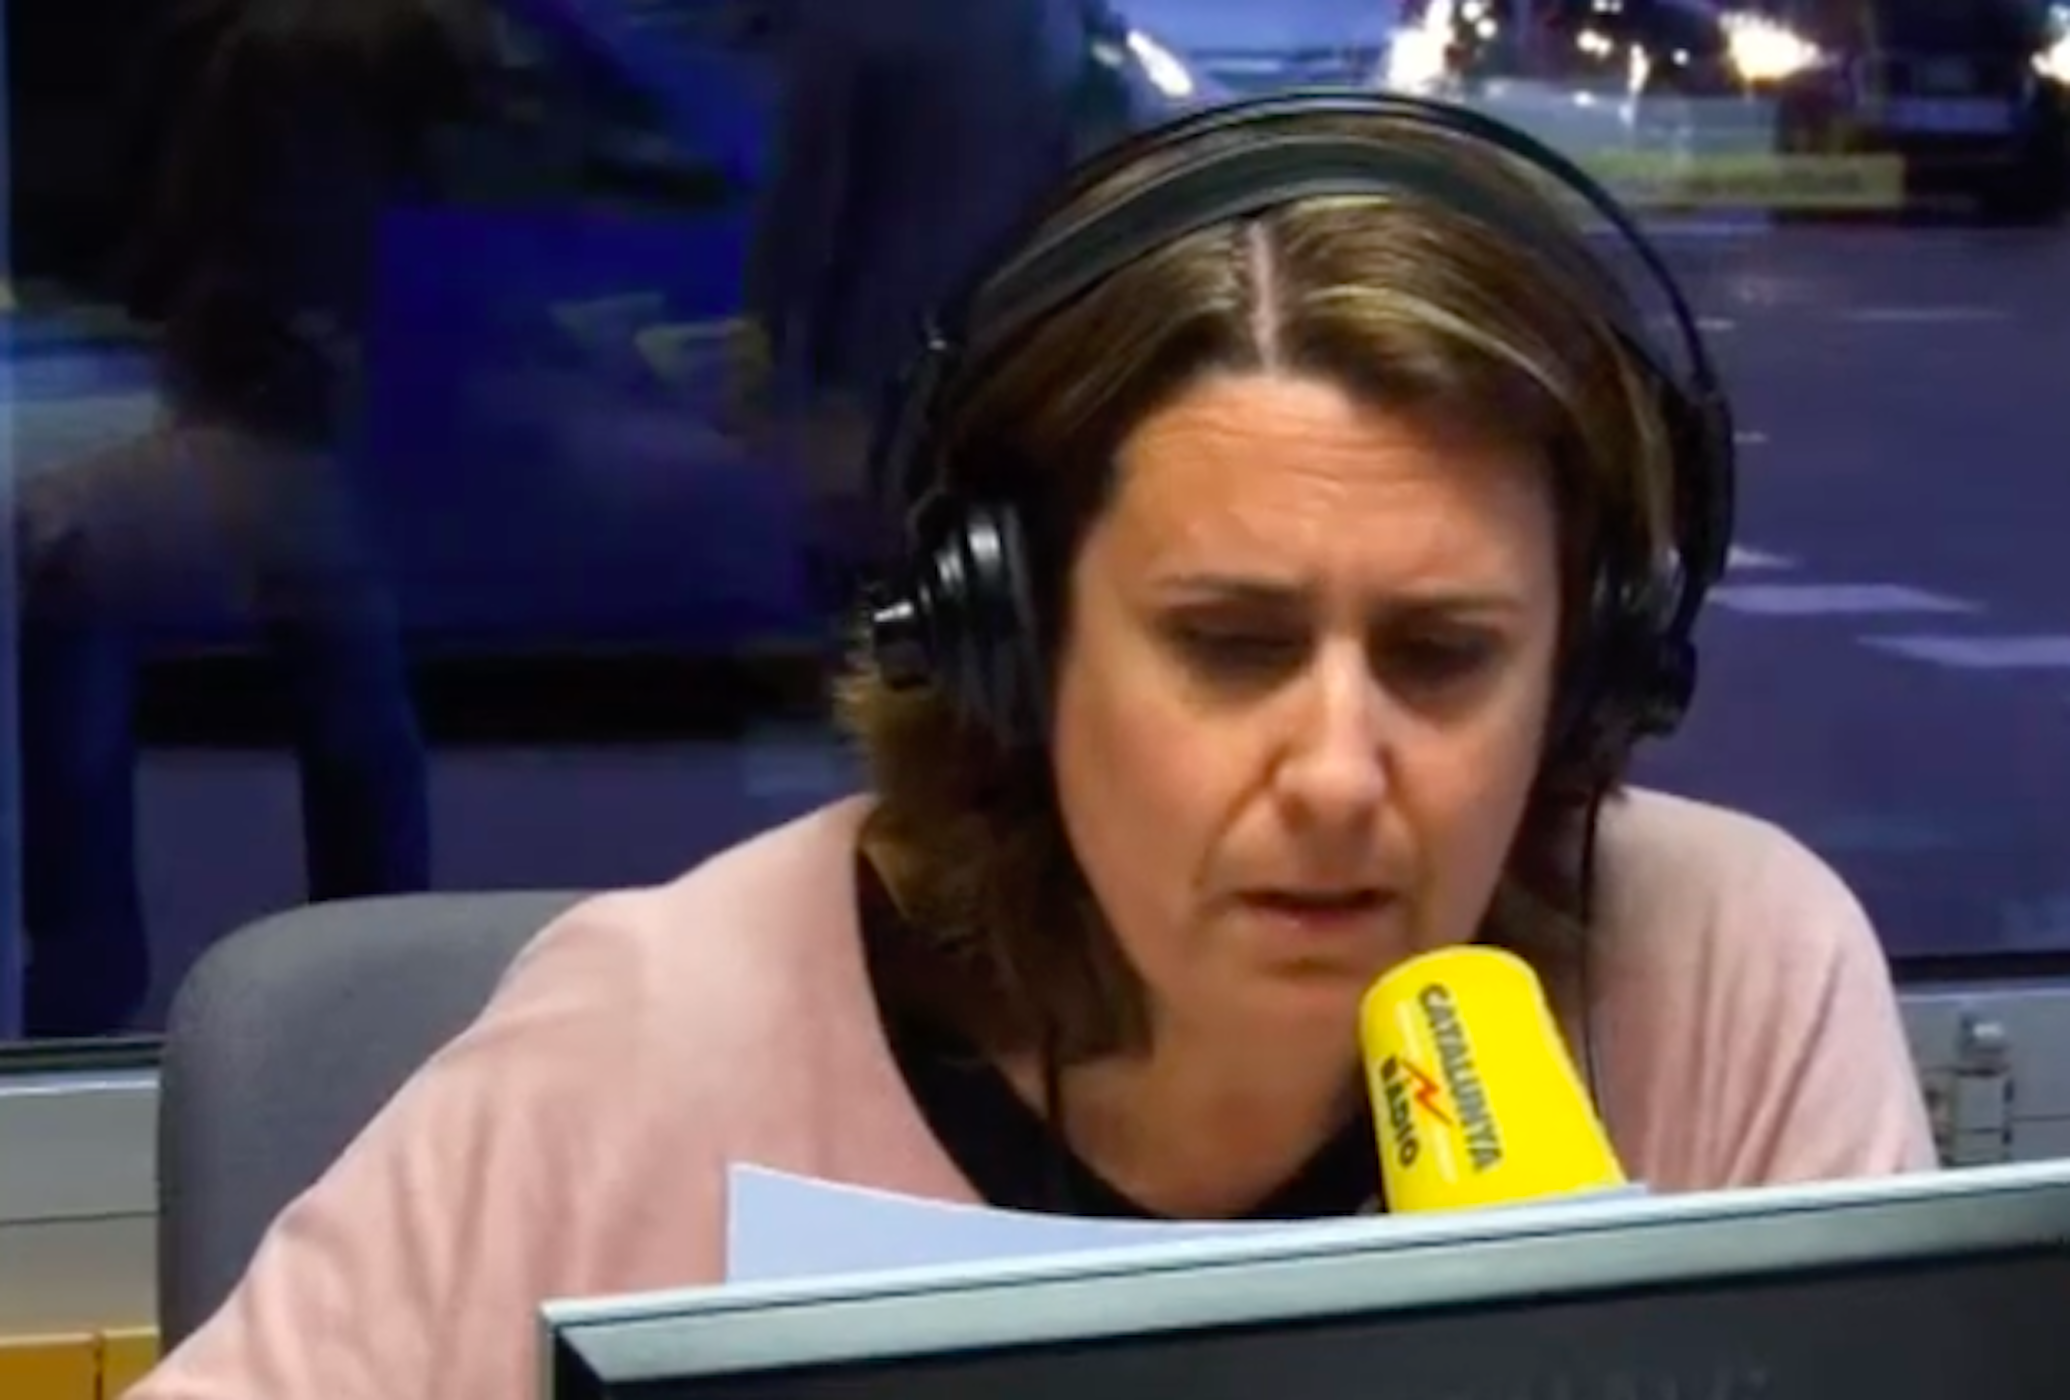 Periodista de 'Catalunya Ràdio' alucina con las 2 cosas que ve camino al trabajo